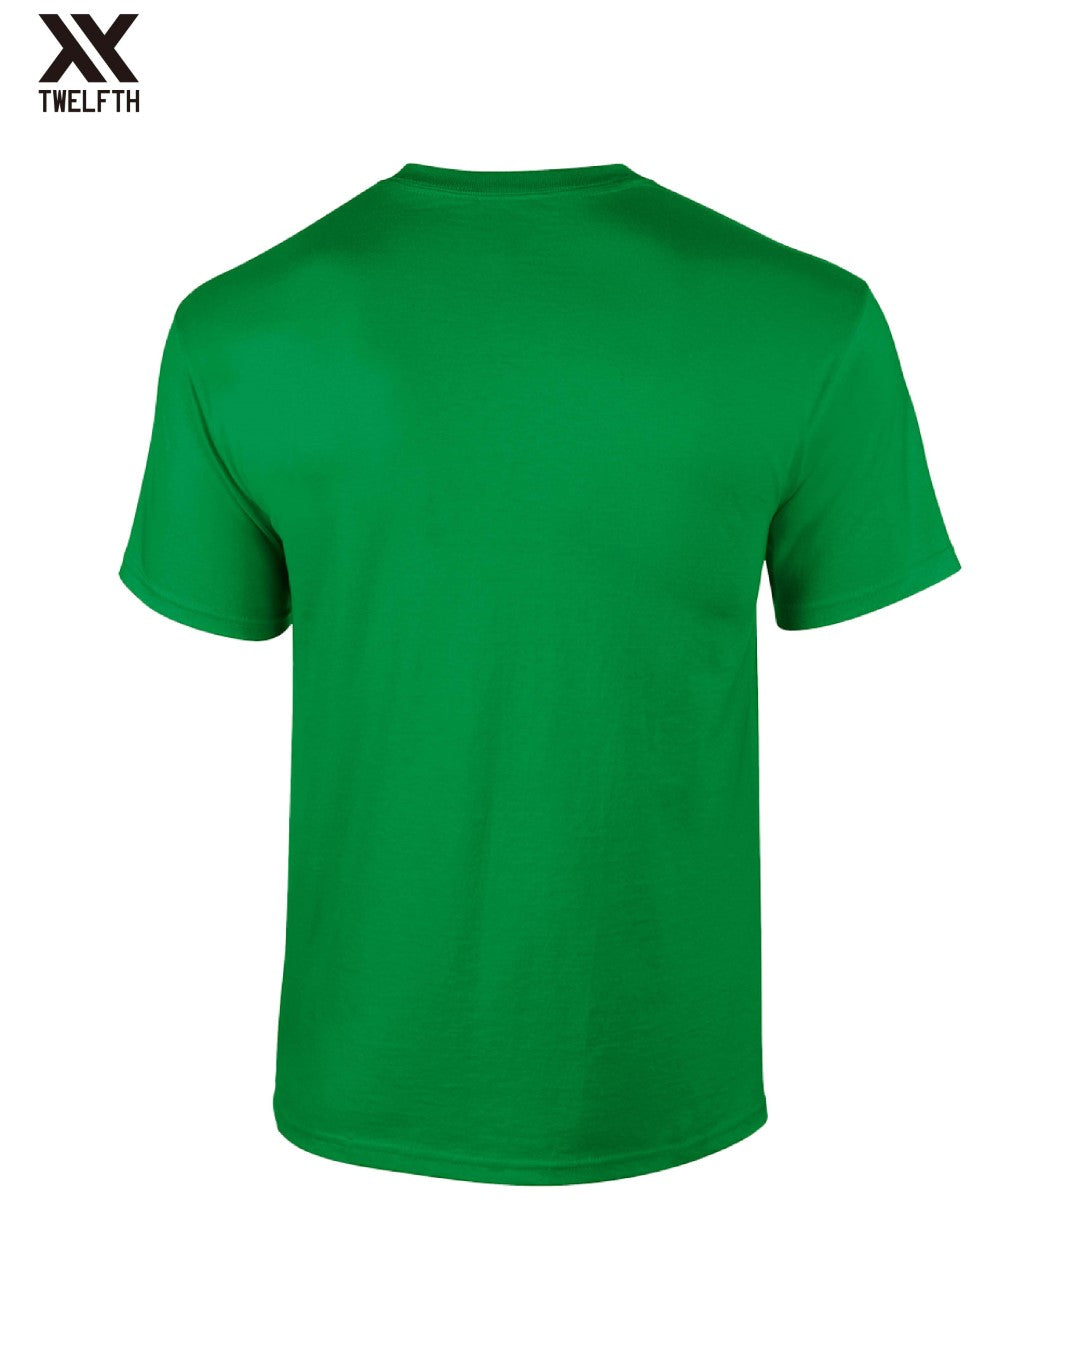 Palmeiras Crest T-Shirt - Mens